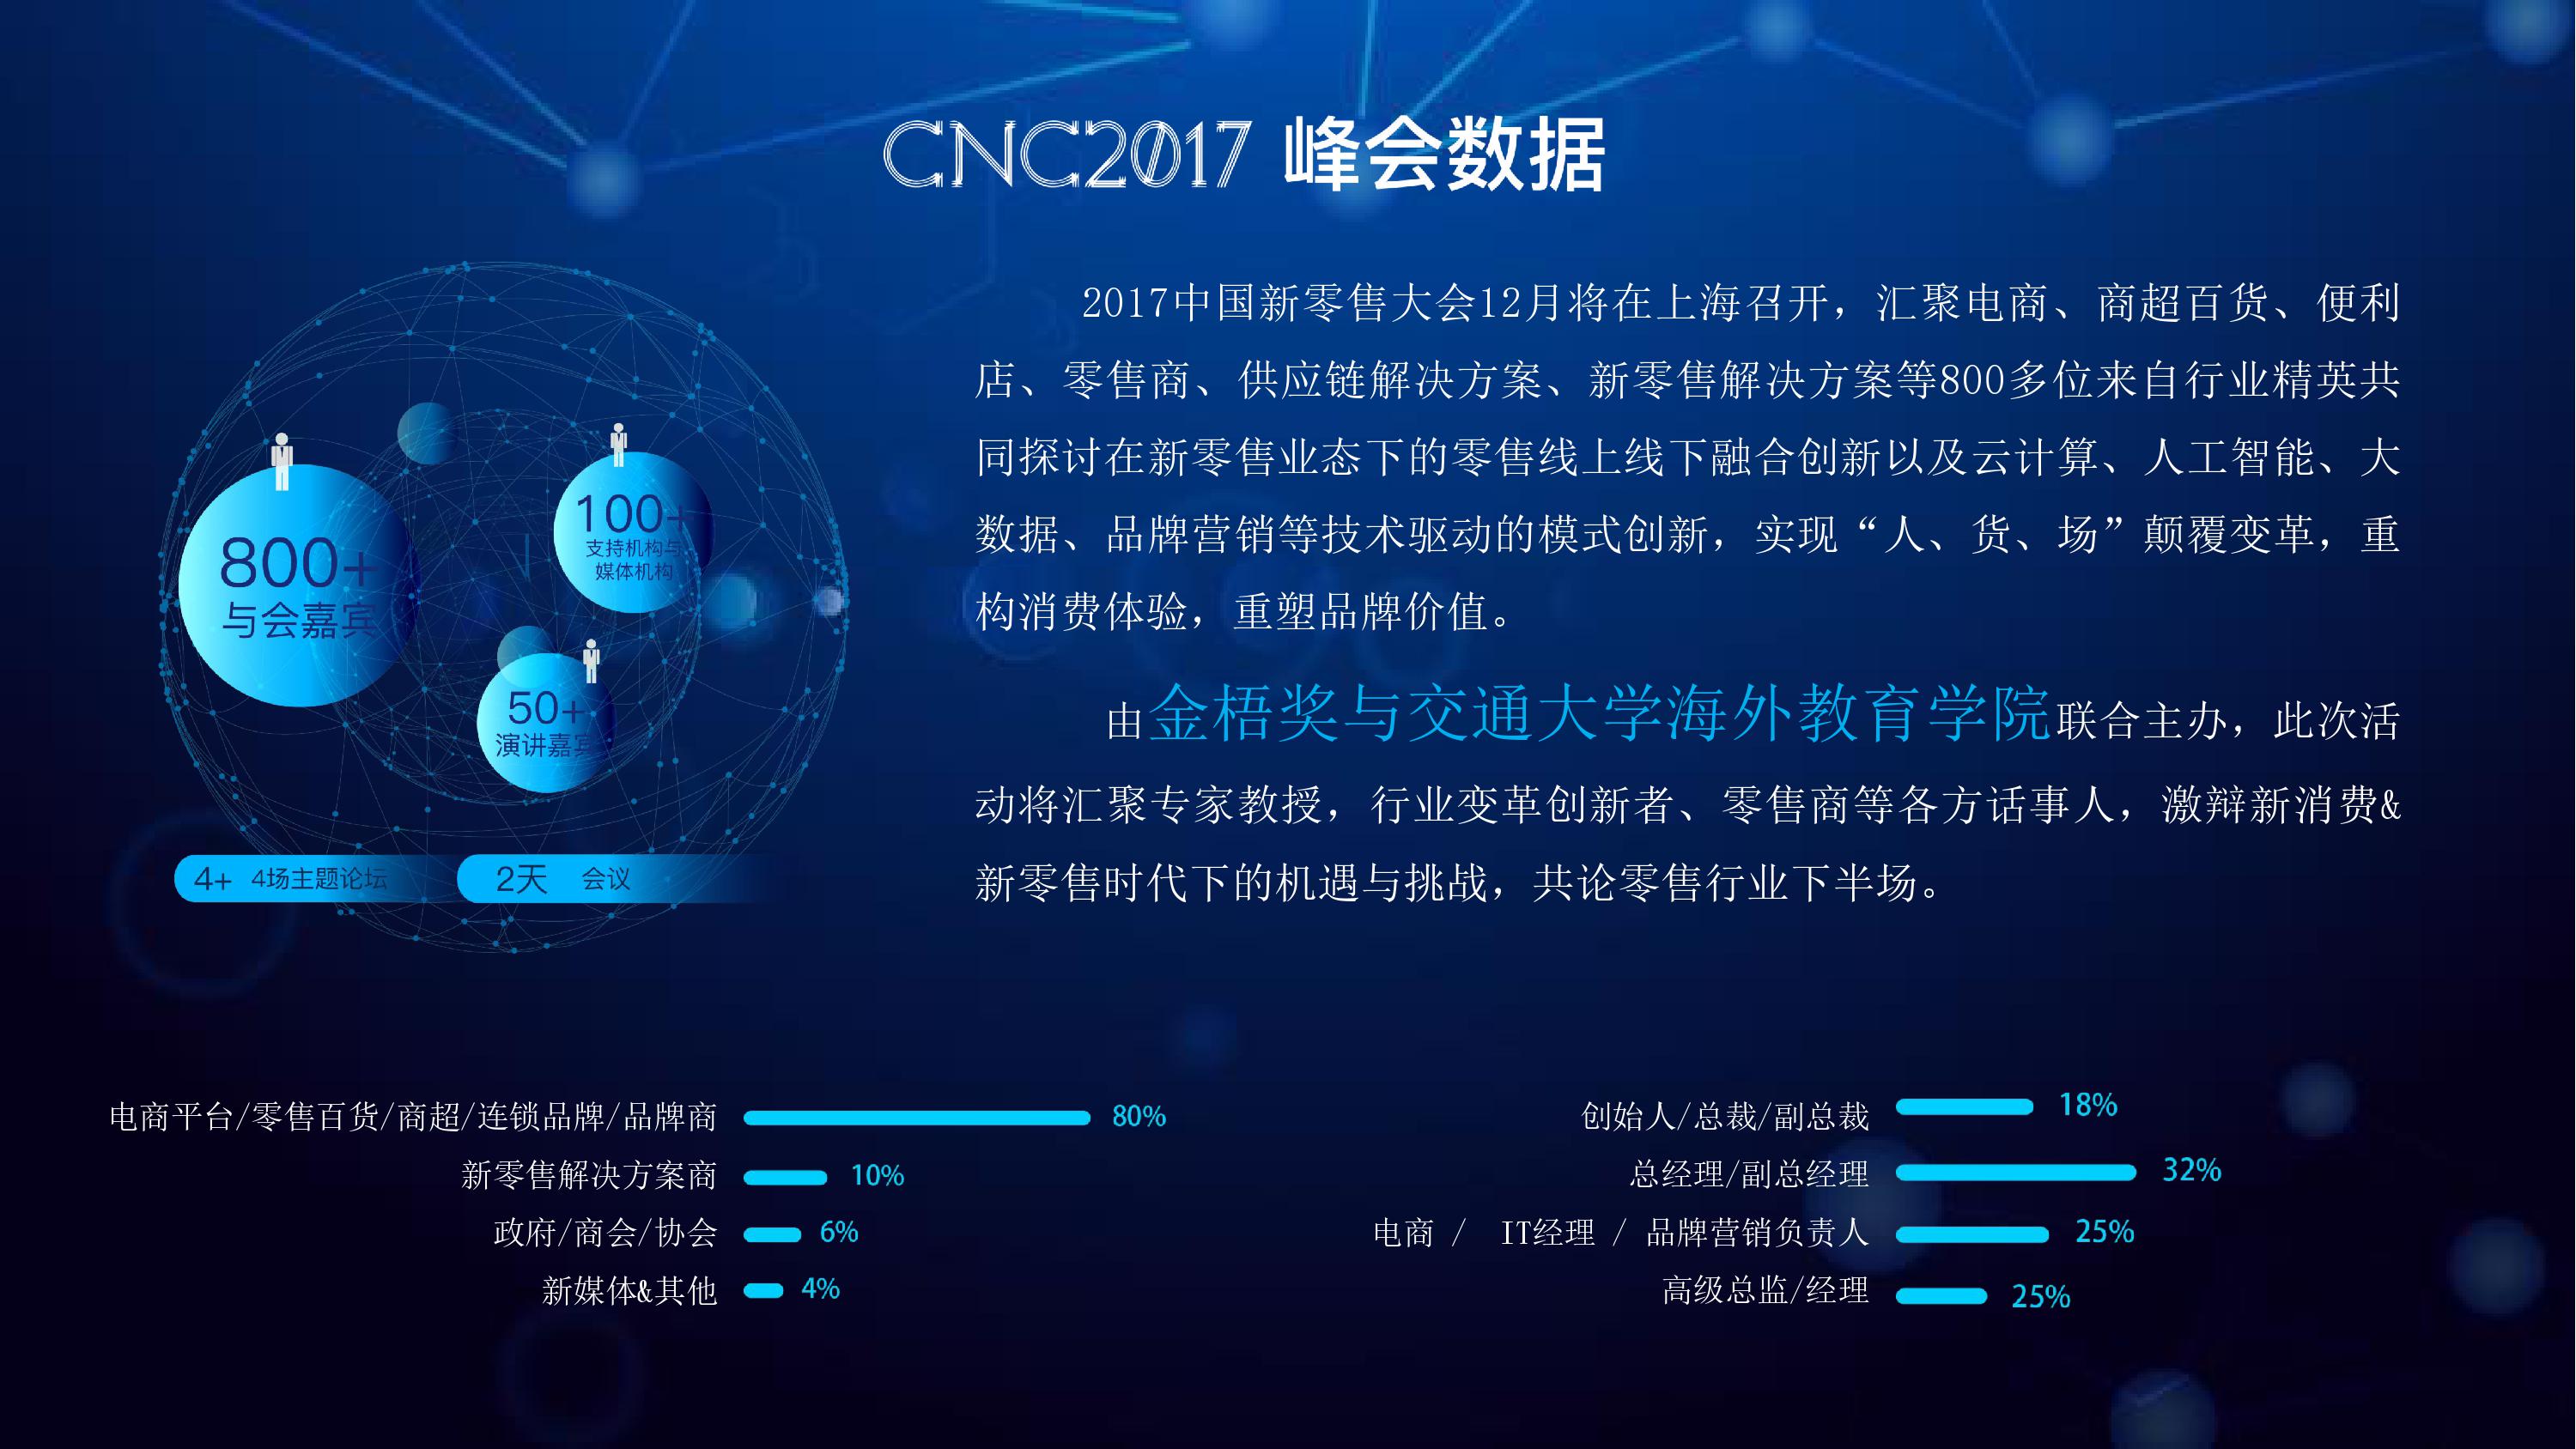 CNC 2017中国新零售大会暨数字零售创新大奖